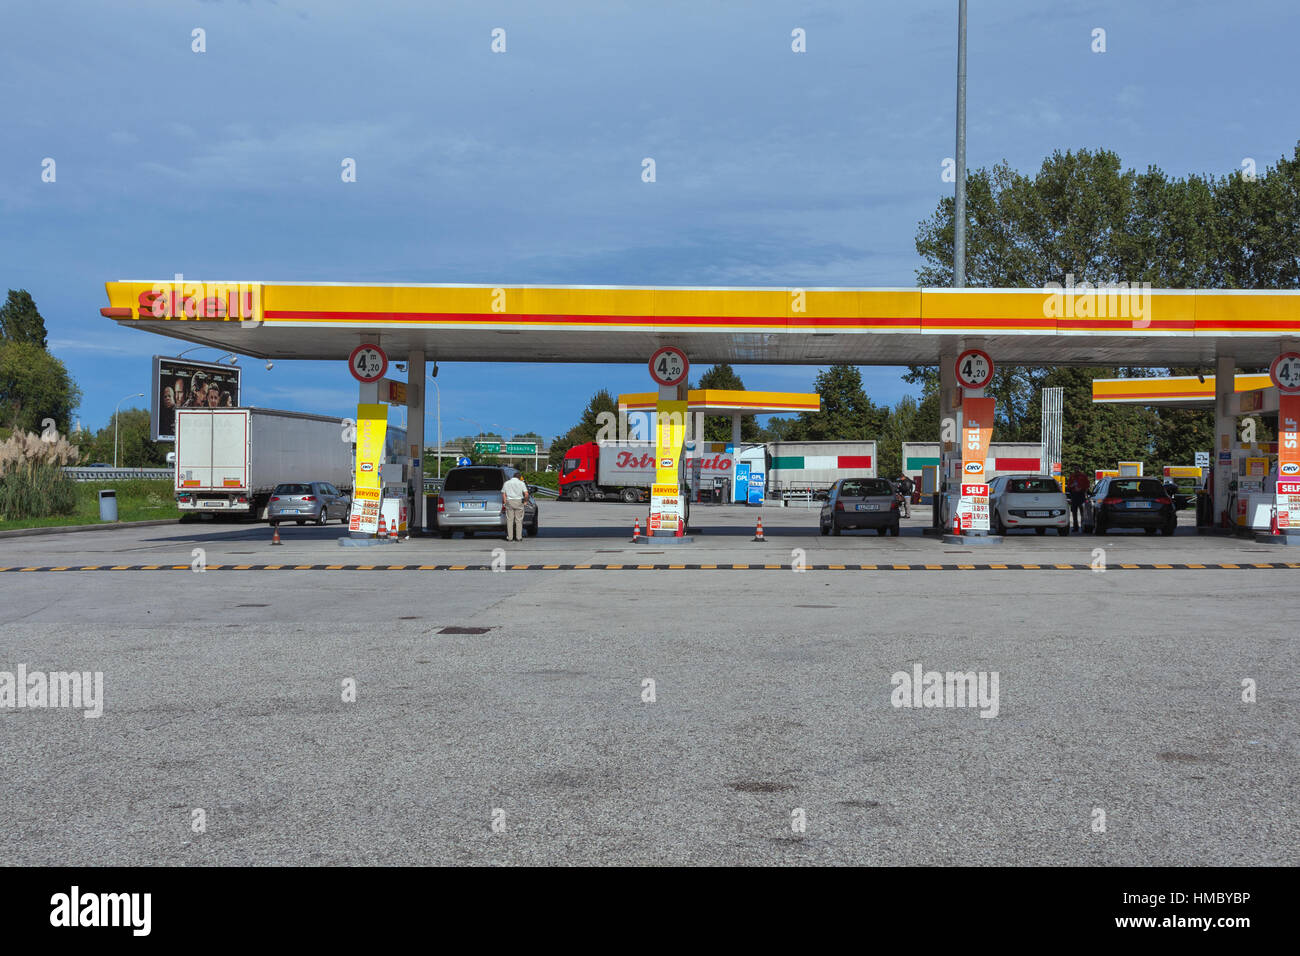 CESSALTO, Italien - 11. September 2014: Menschen füllen Sie Autos auf Shell- Tankstelle in der Nähe Autobahn. Royal Dutch Shell ist ein multinationales  Unternehmen, eines Stockfotografie - Alamy